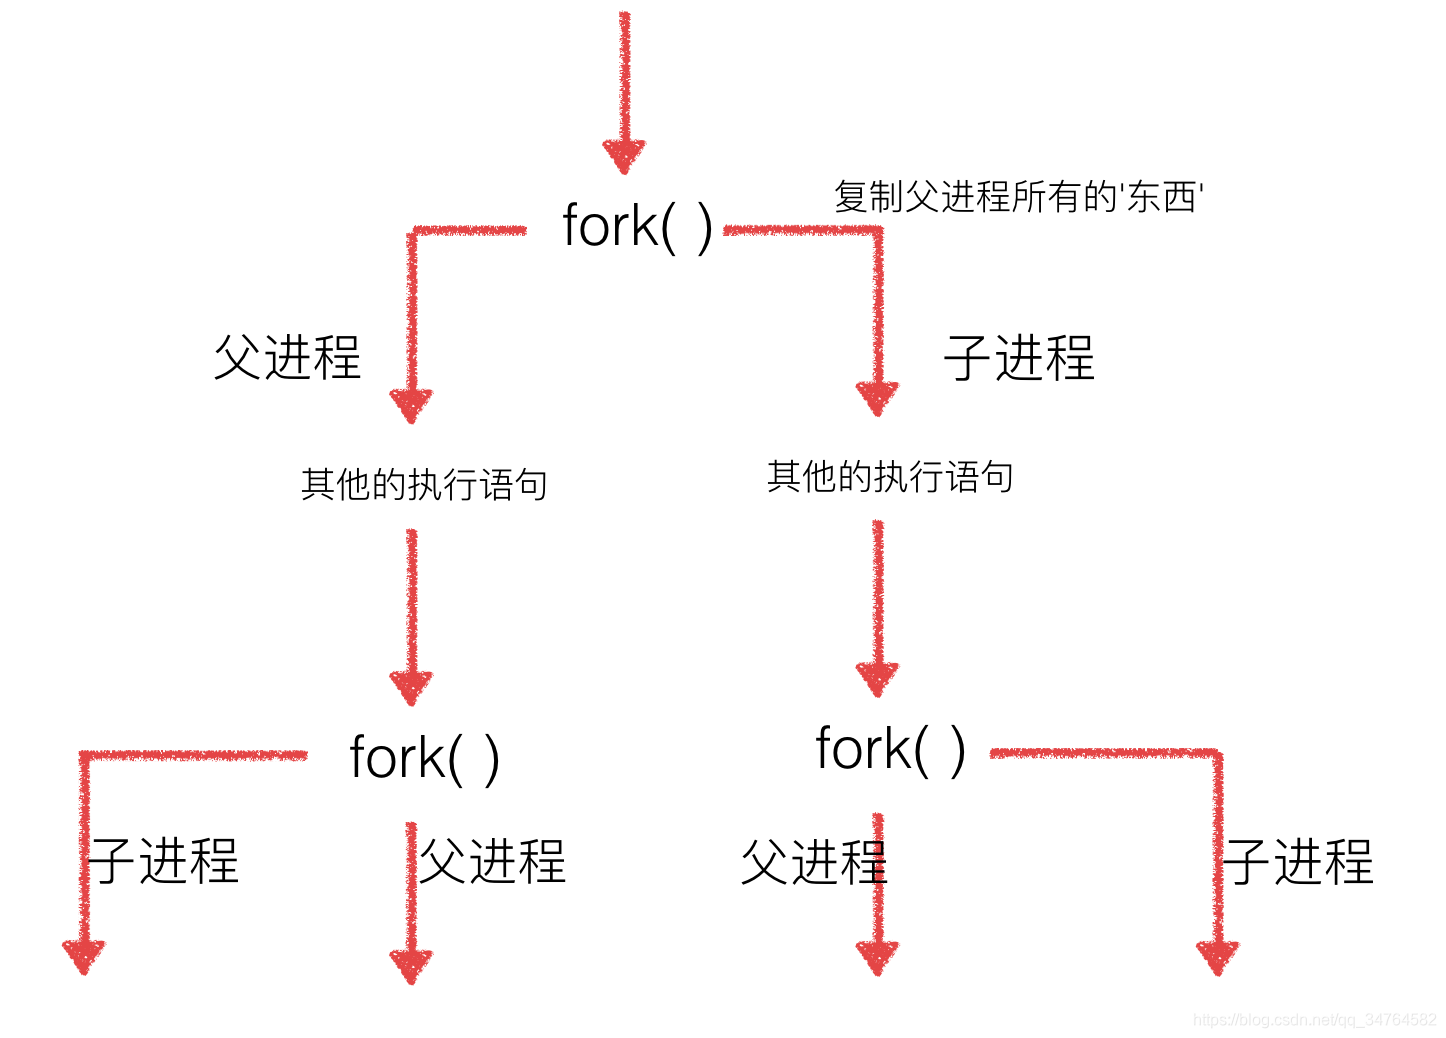 fork理解